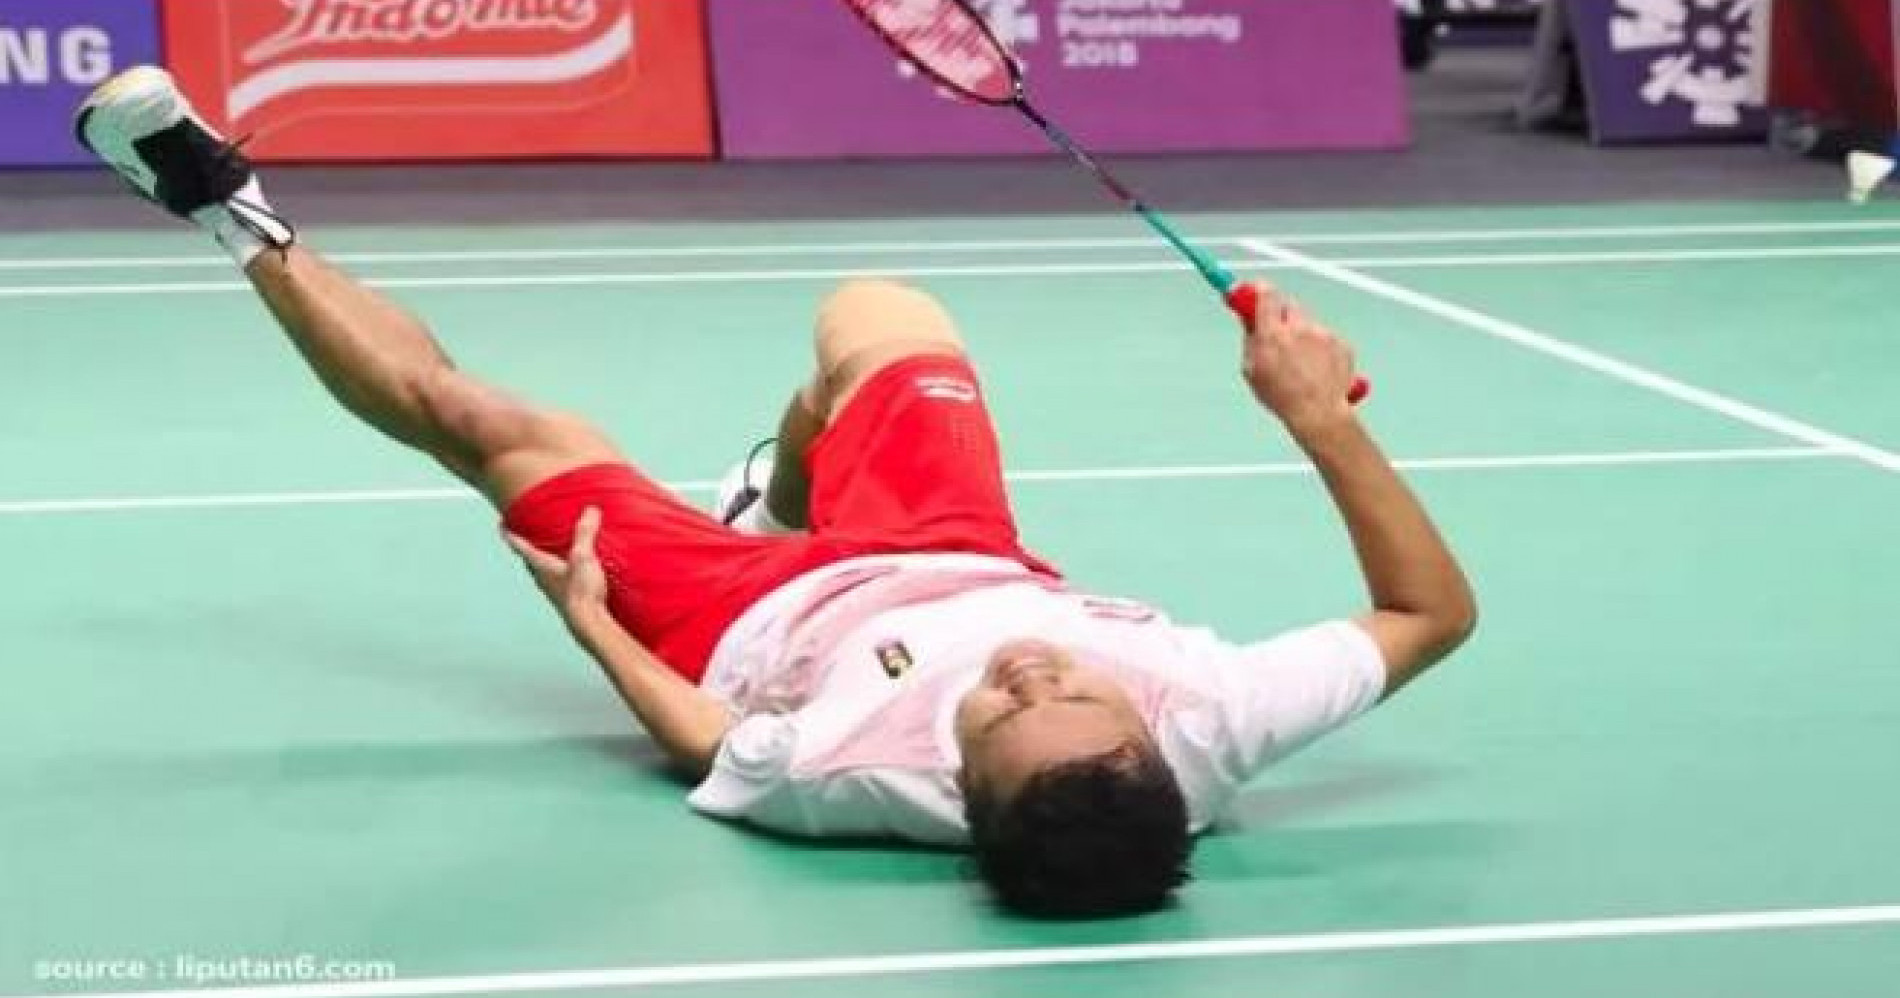 Atlit badminton Ginting mengalami cedera saat bermain - Image: Istimewa